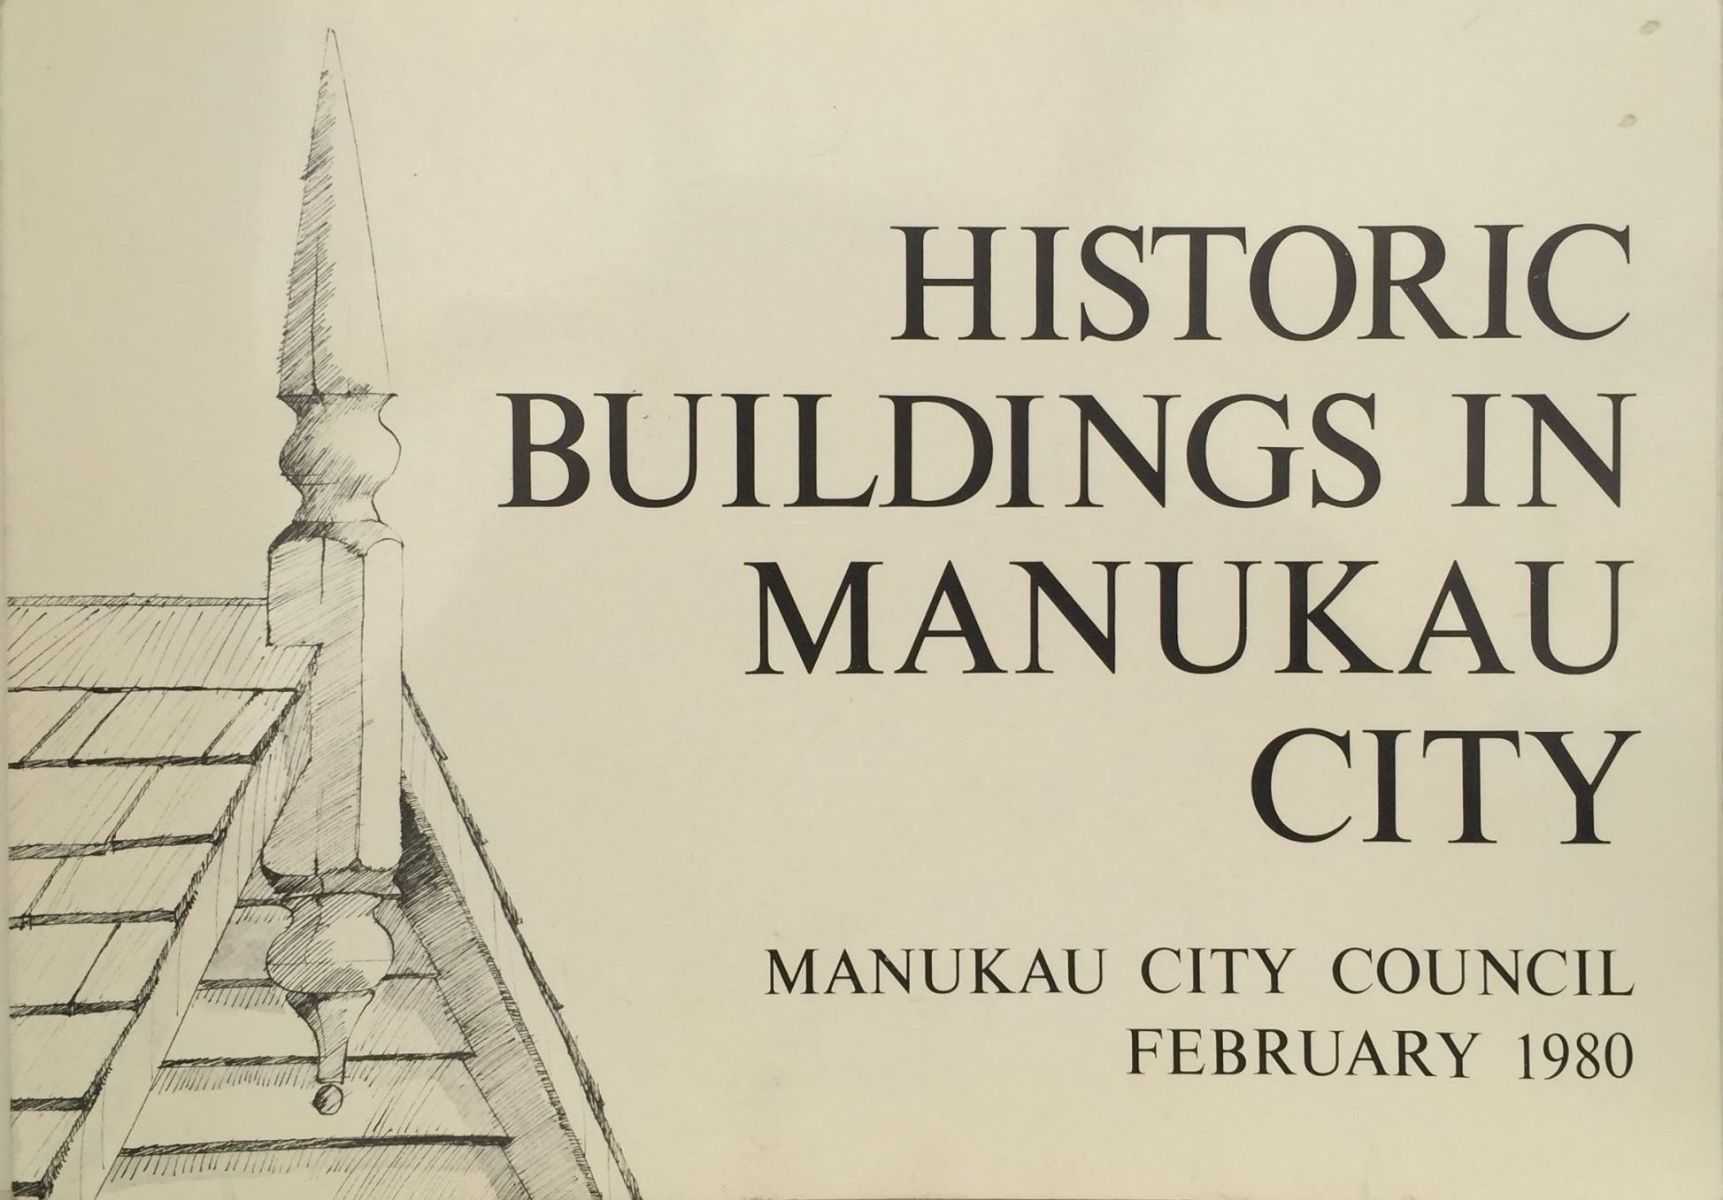 HISTORIC BUILDINGS IN MANUKAU CITY: Manukau City Council